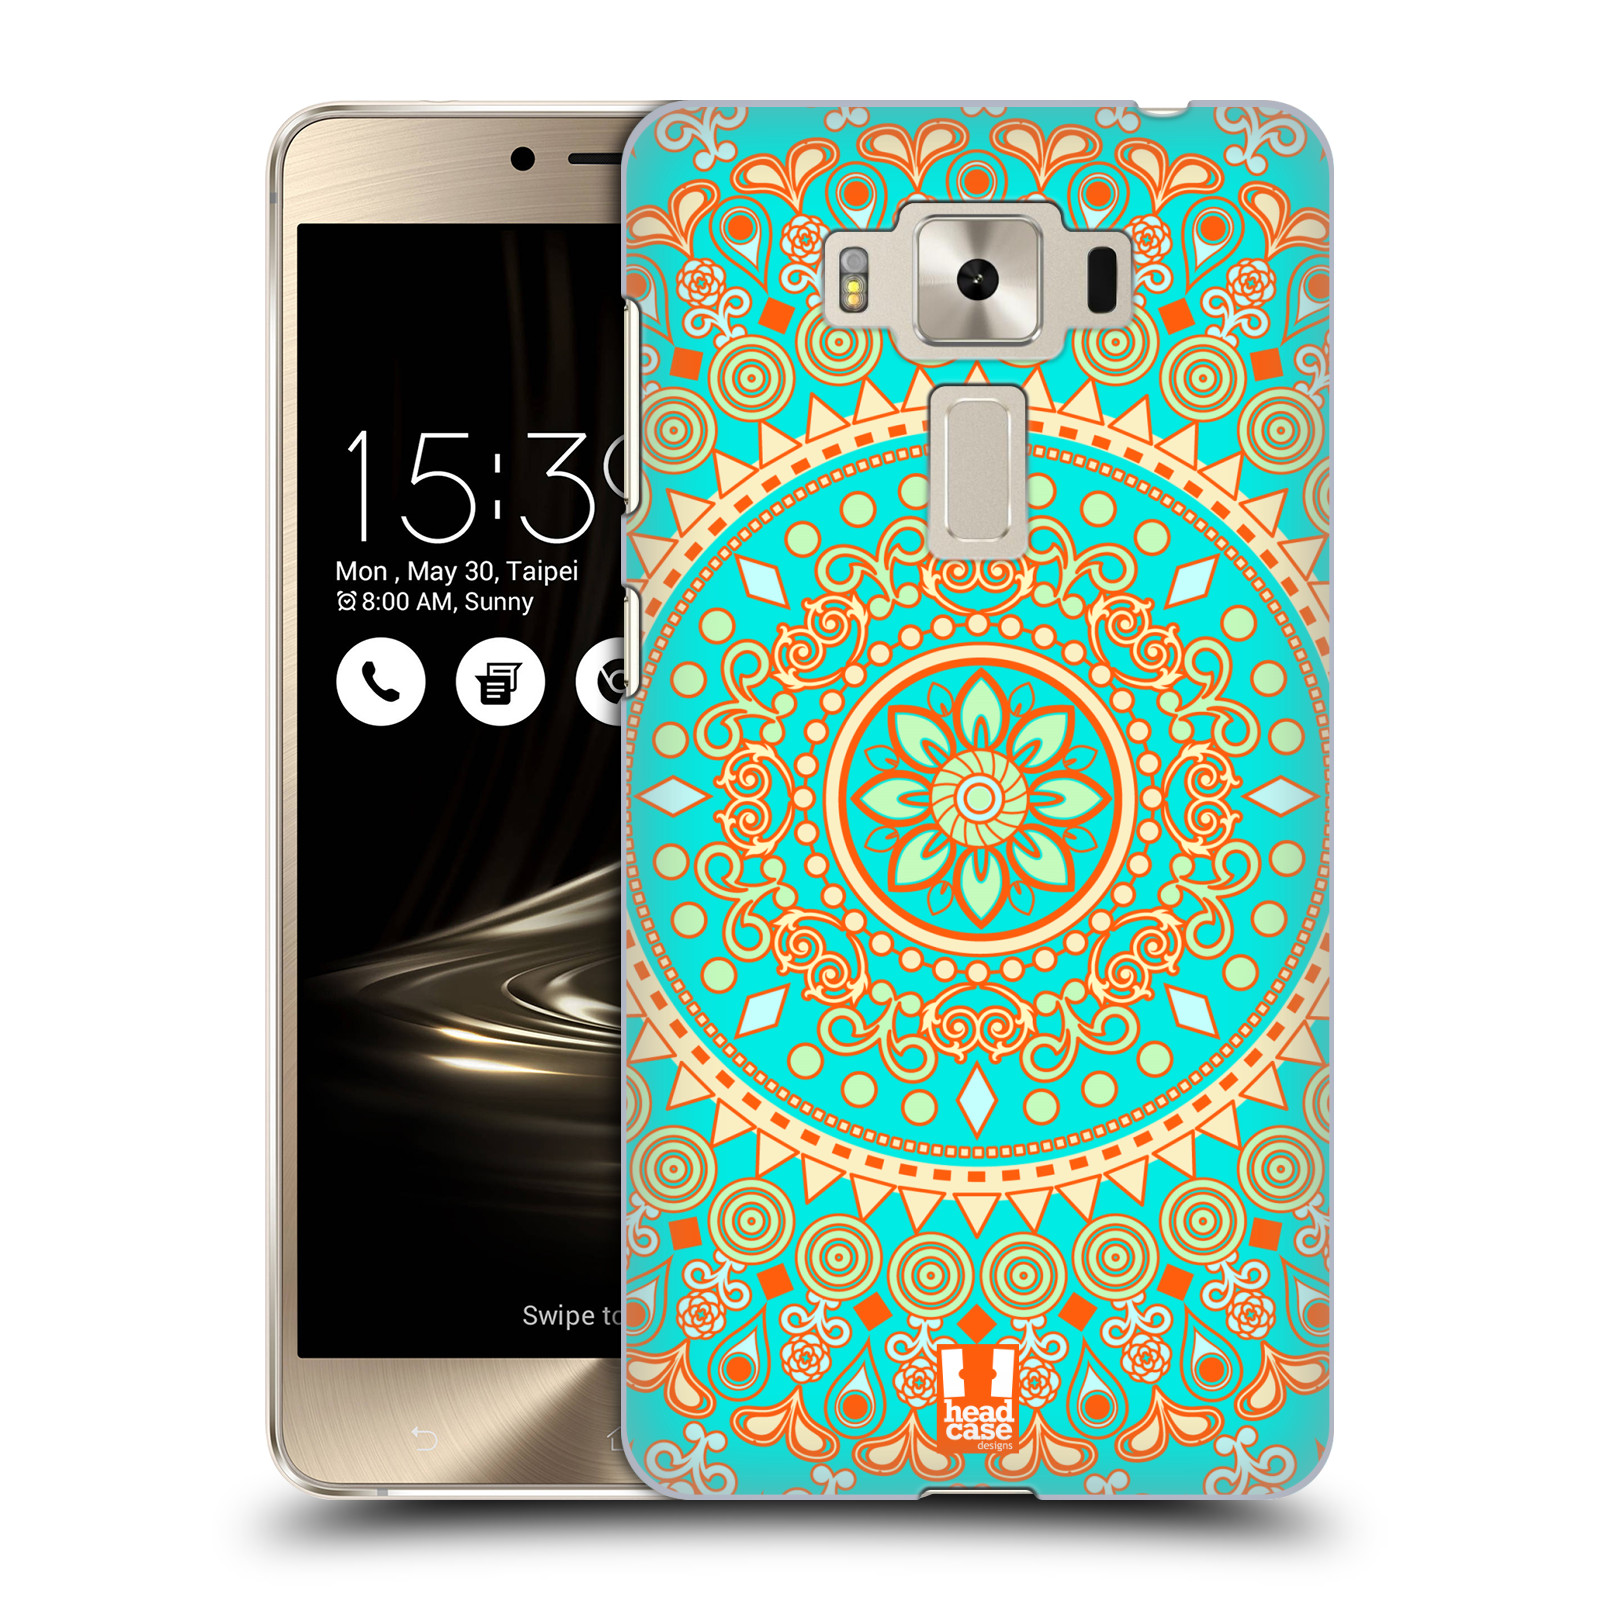 HEAD CASE plastový obal na mobil Asus Zenfone 3 DELUXE ZS550KL vzor Indie Mandala slunce barevný motiv TYRKYSOVÁ, ZELENÁ